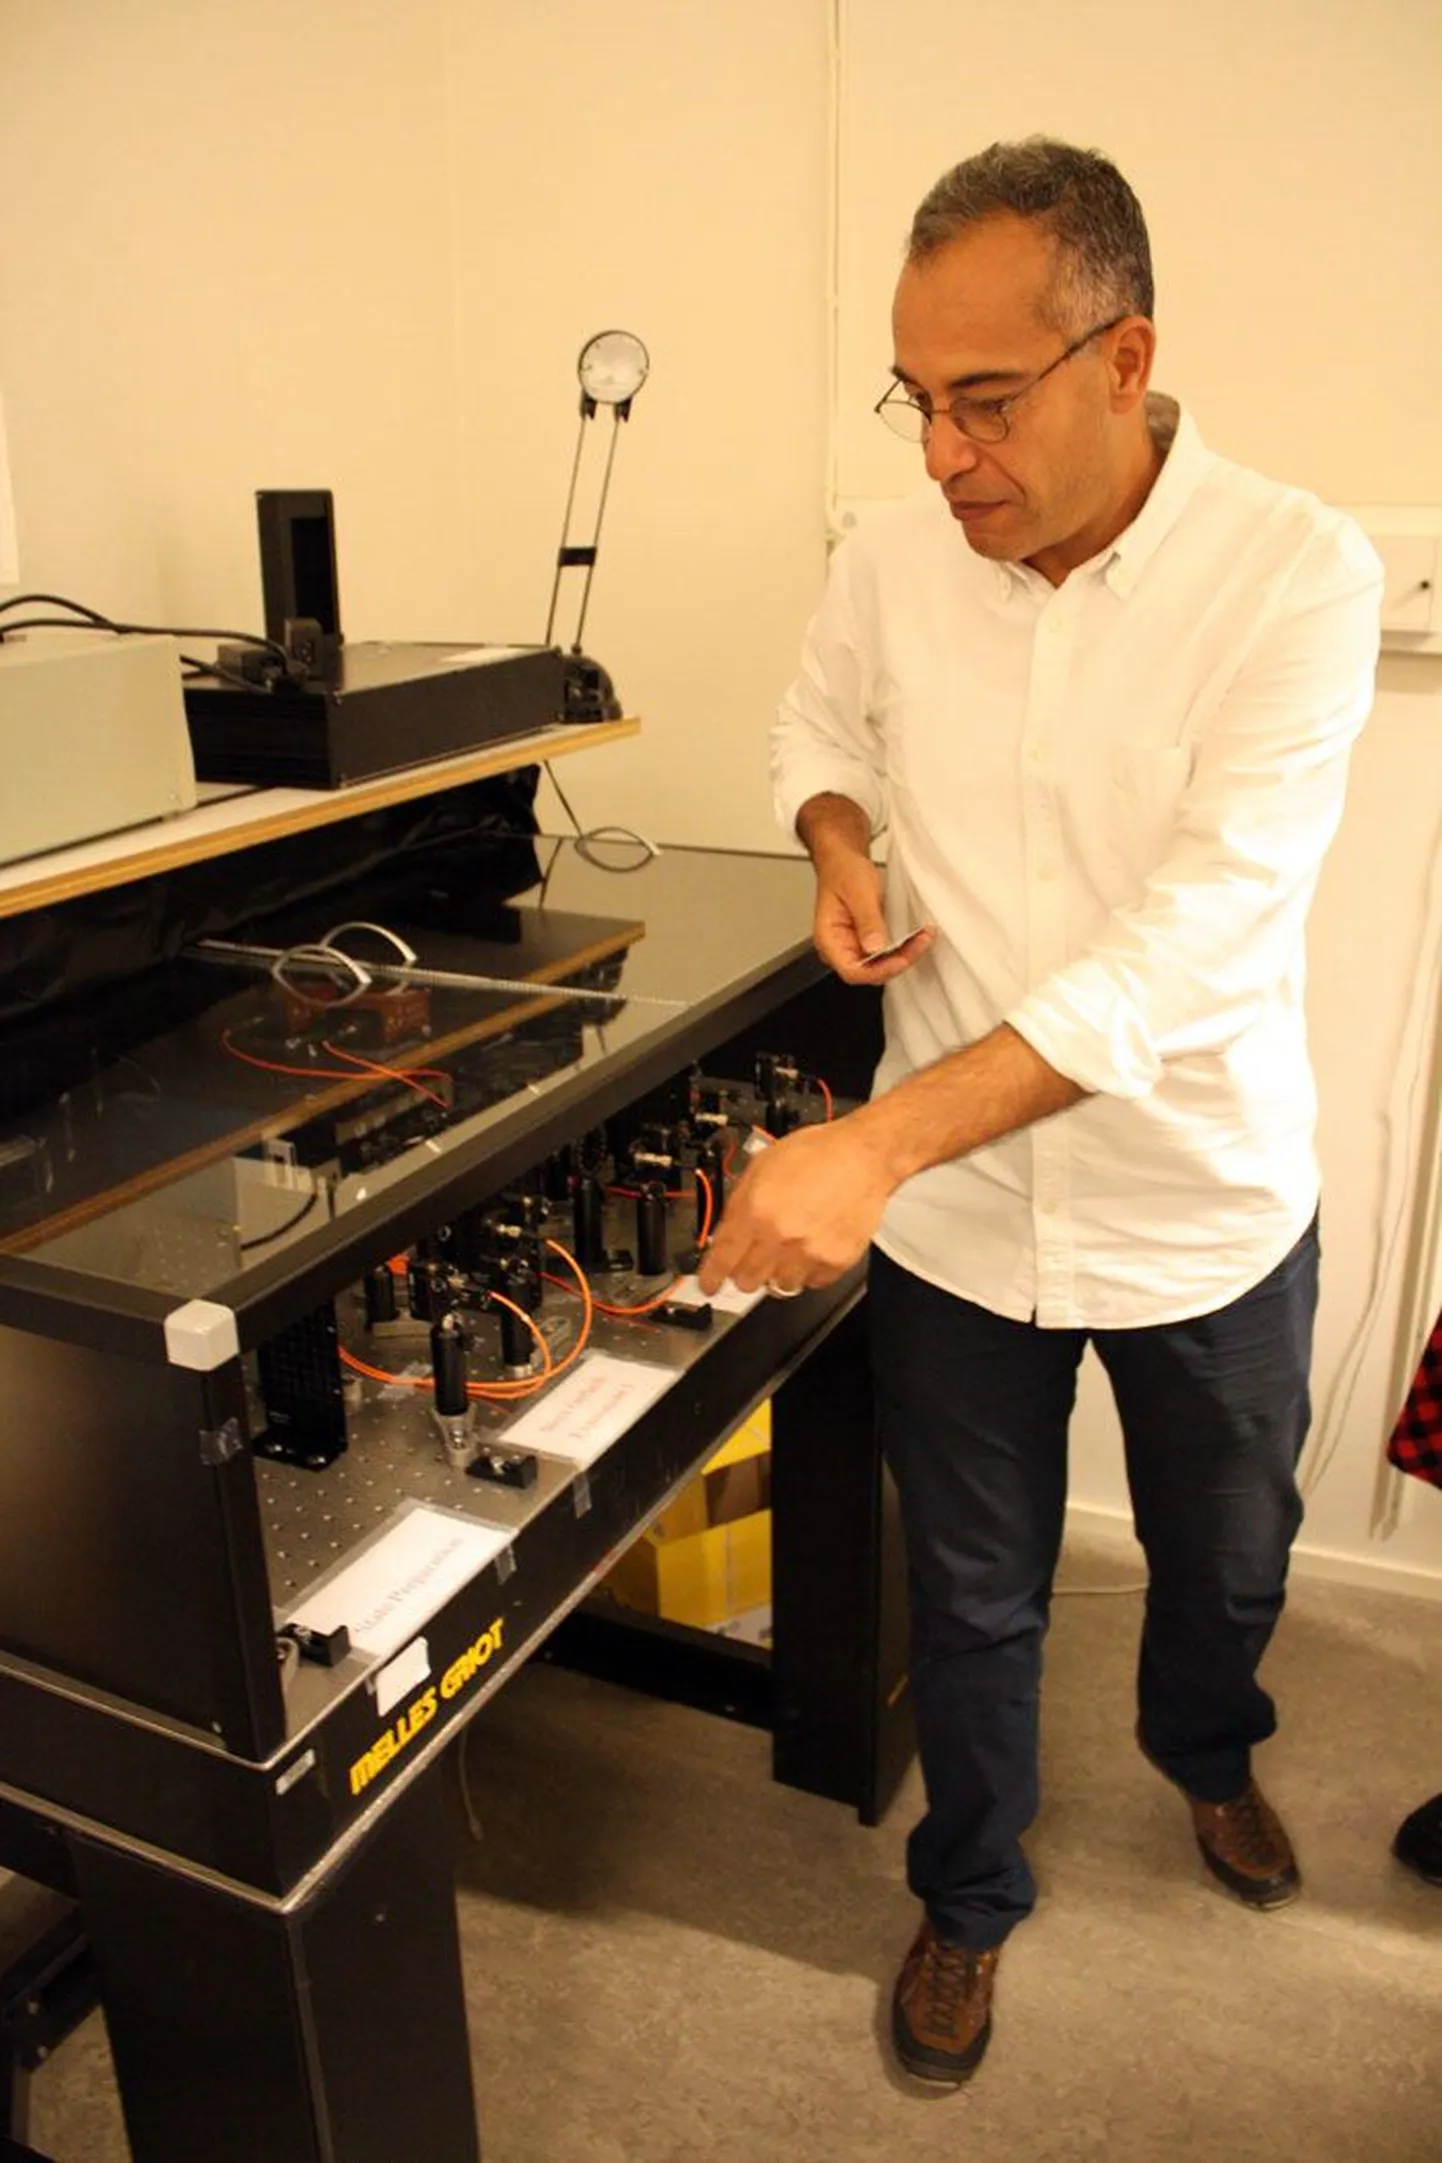 Stockholmi ülikooli füüsikaosakonna professor Mohamed Bourennane demonstreerib meile vibratsioonikindlatele teraslaudadele ehitatud katseseadmeid, millega saab uurida kvantmaailma veidrusi.